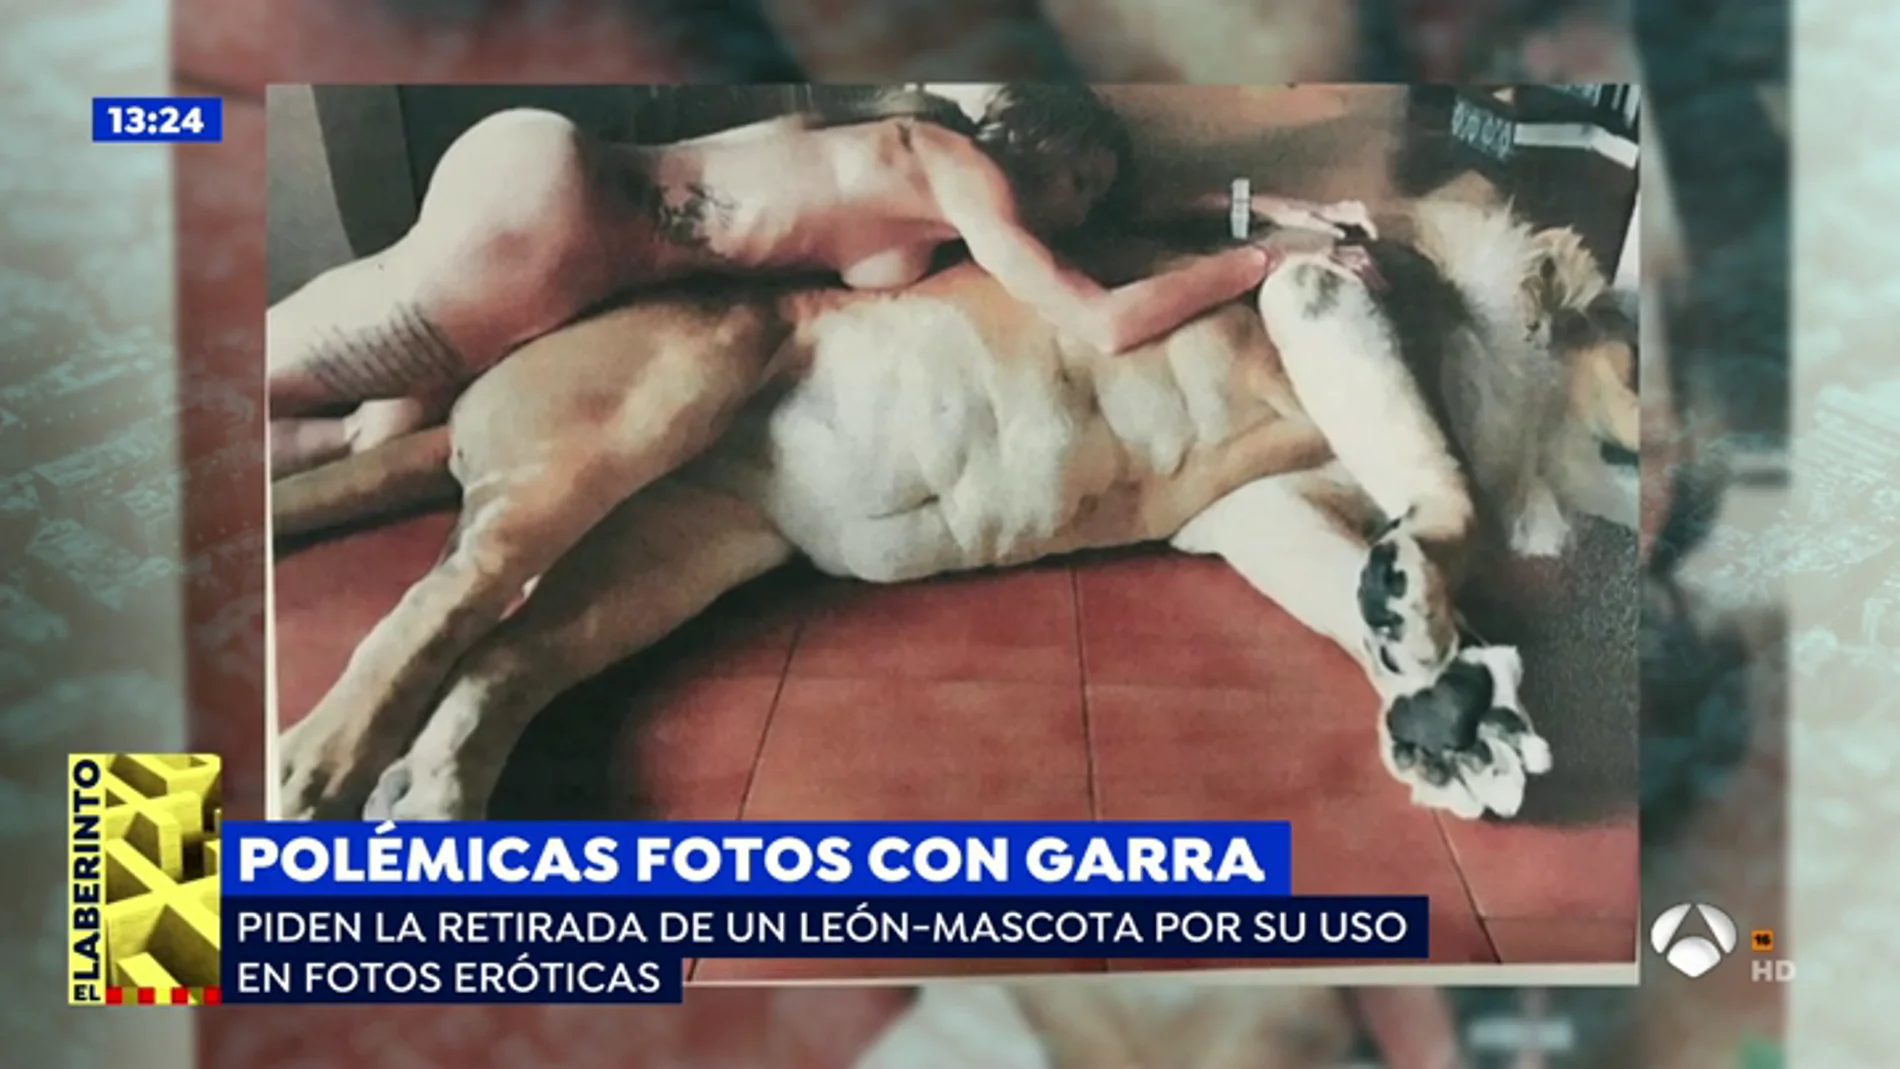 Intentan retirar el león-mascota a una pareja por su uso en fotos eróticas: "Vivimos en pelotas y nos encanta"